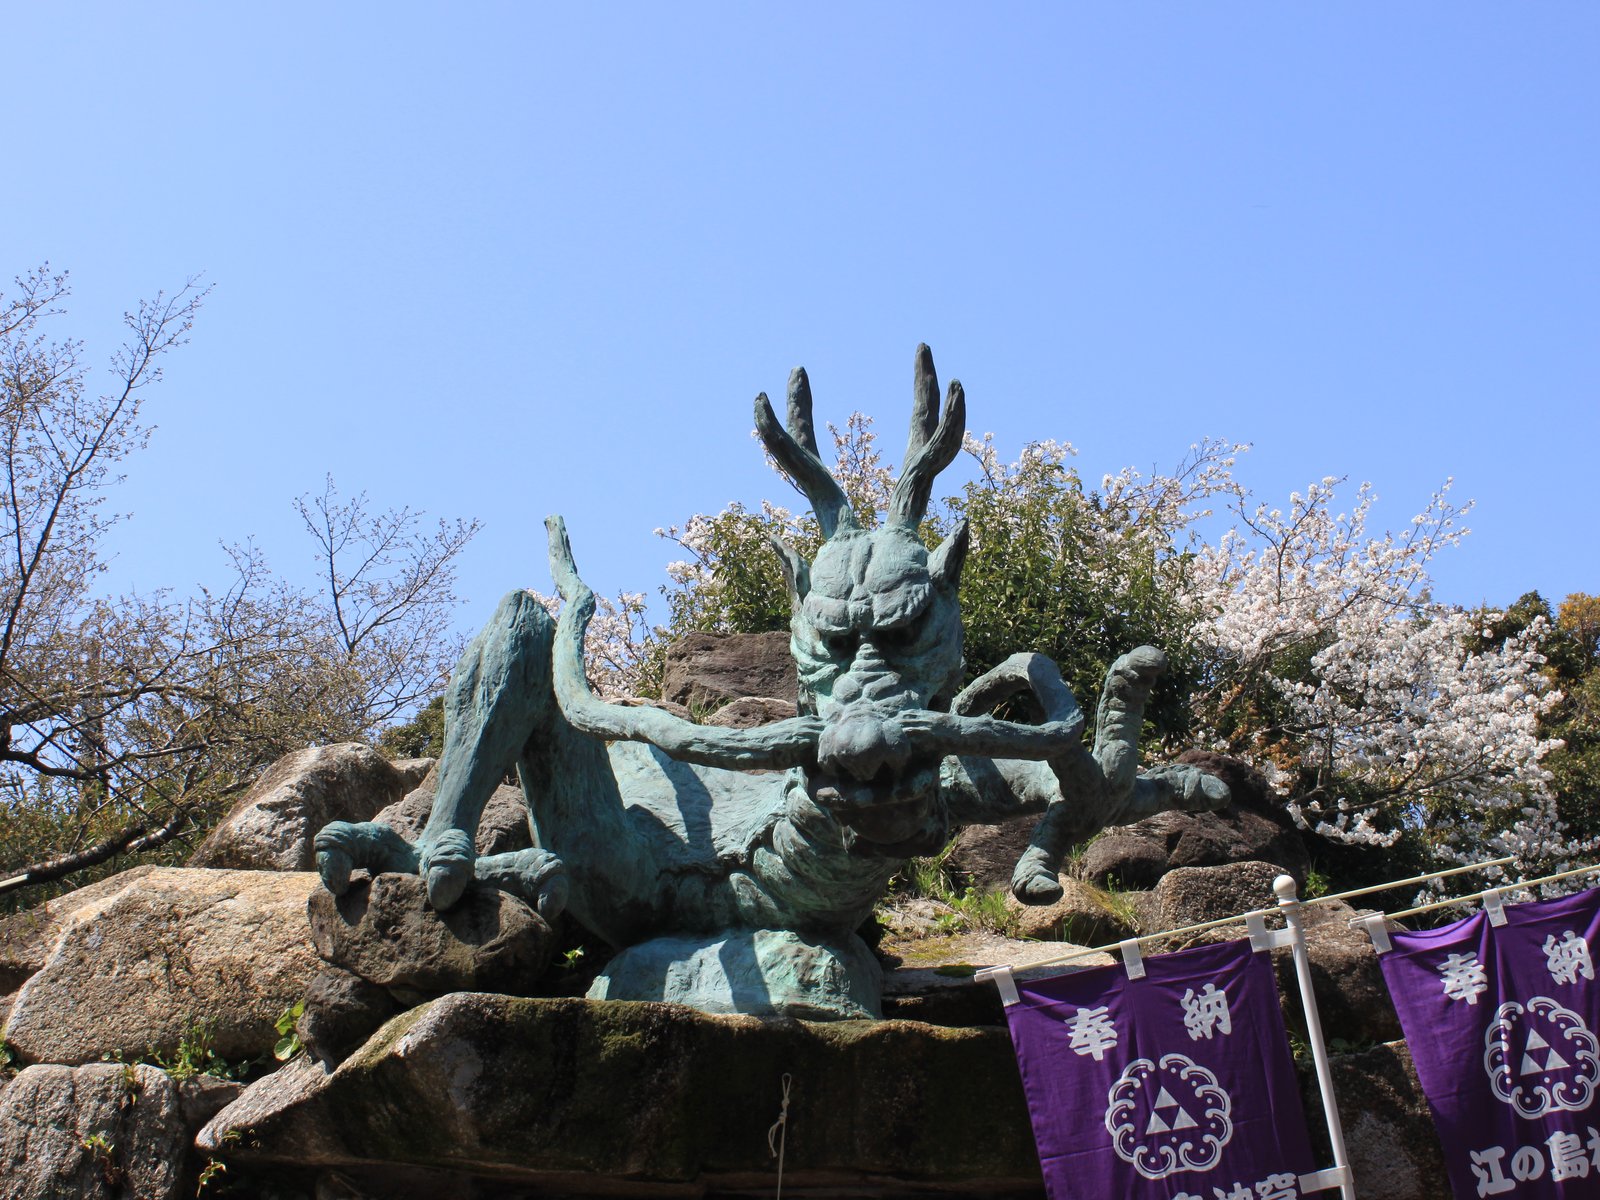 江島神社 奥津宮